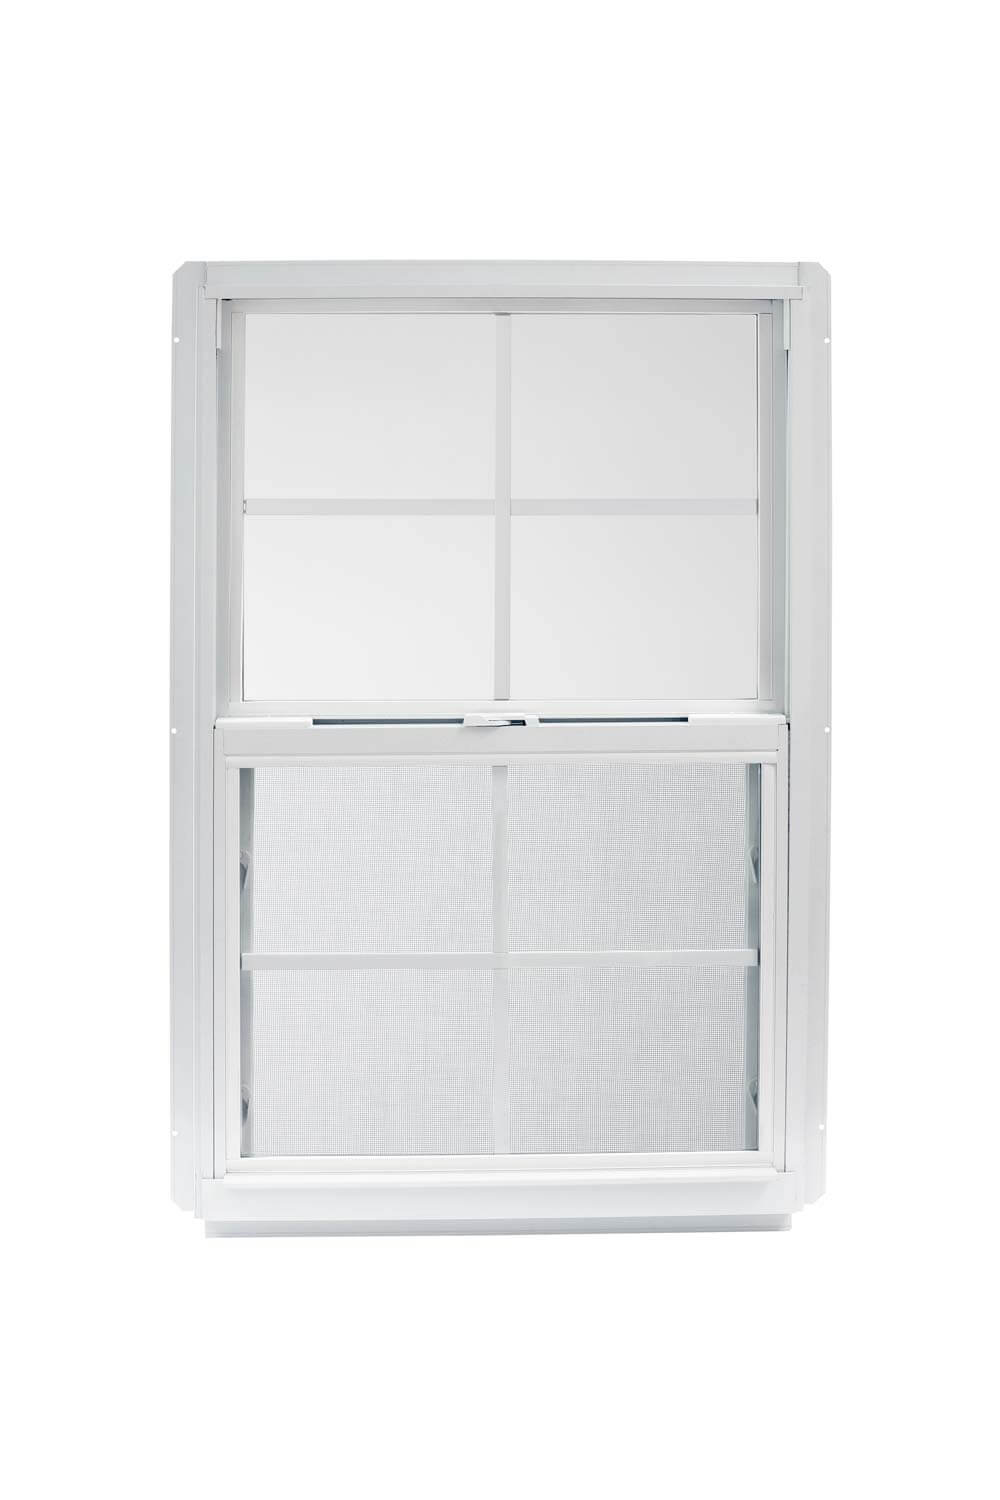 2' x 4'4" White Aluminum Insulated Window (4/4 Window Pane Arrangement) Series 96